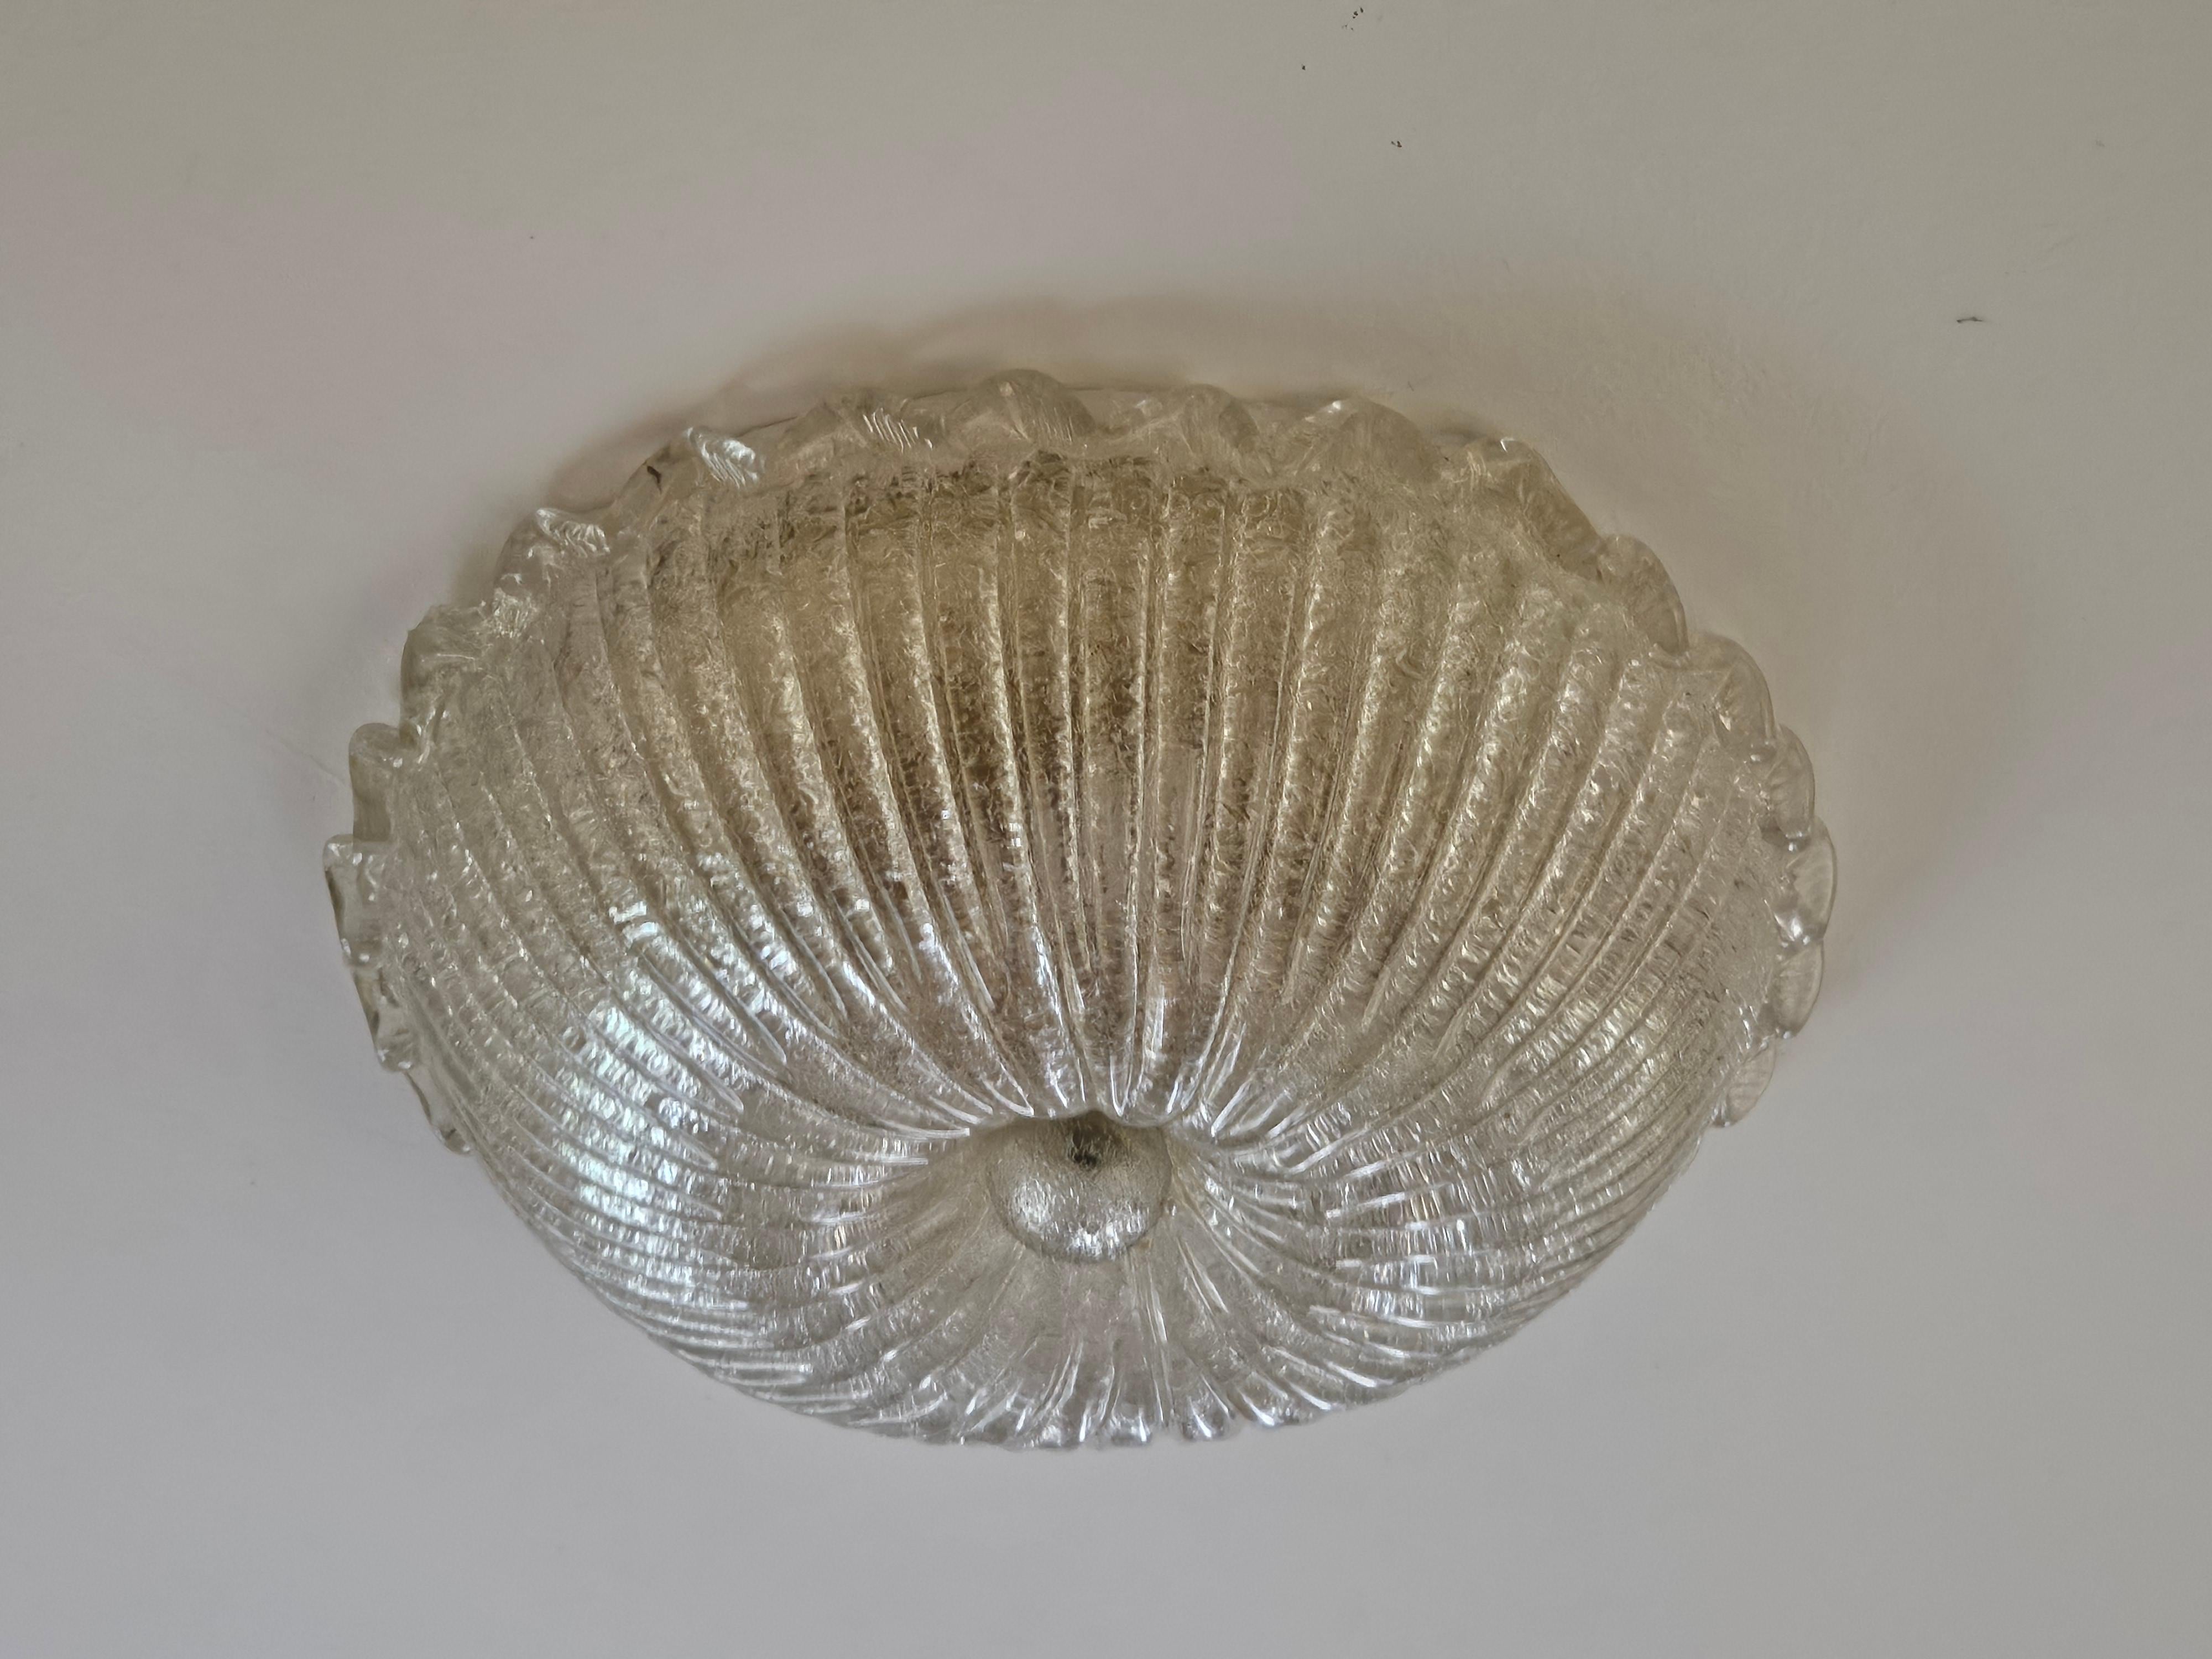 Semplice ed elegante lampadario da soffitto in vetro di Murano, produzione Veneziana dei primi anni '70.

Lampadine non incluse.
